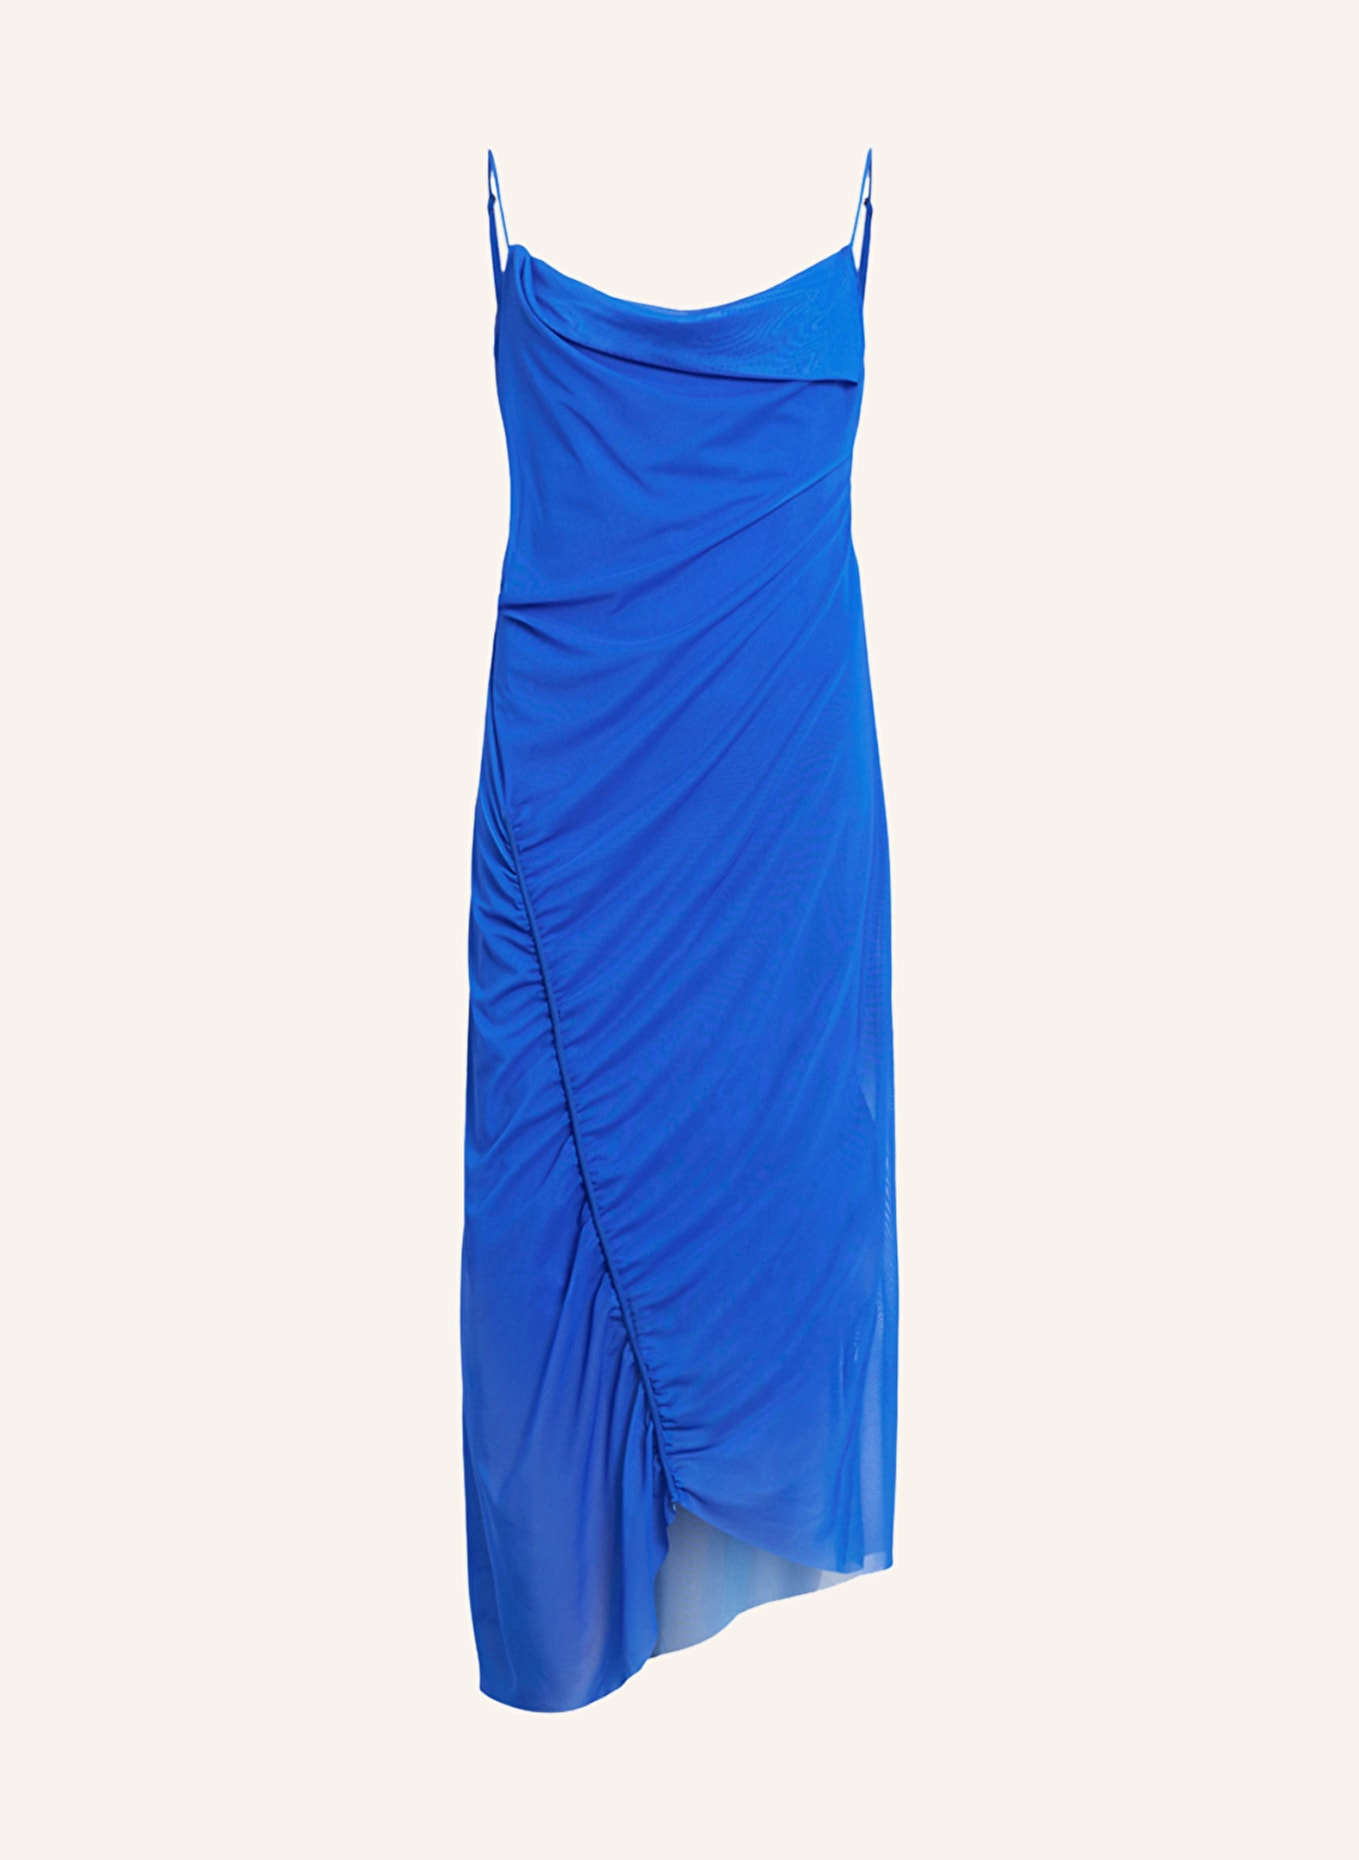 ALLSAINTS Dress ULLA in mesh, Color: BLUE (Image 1)